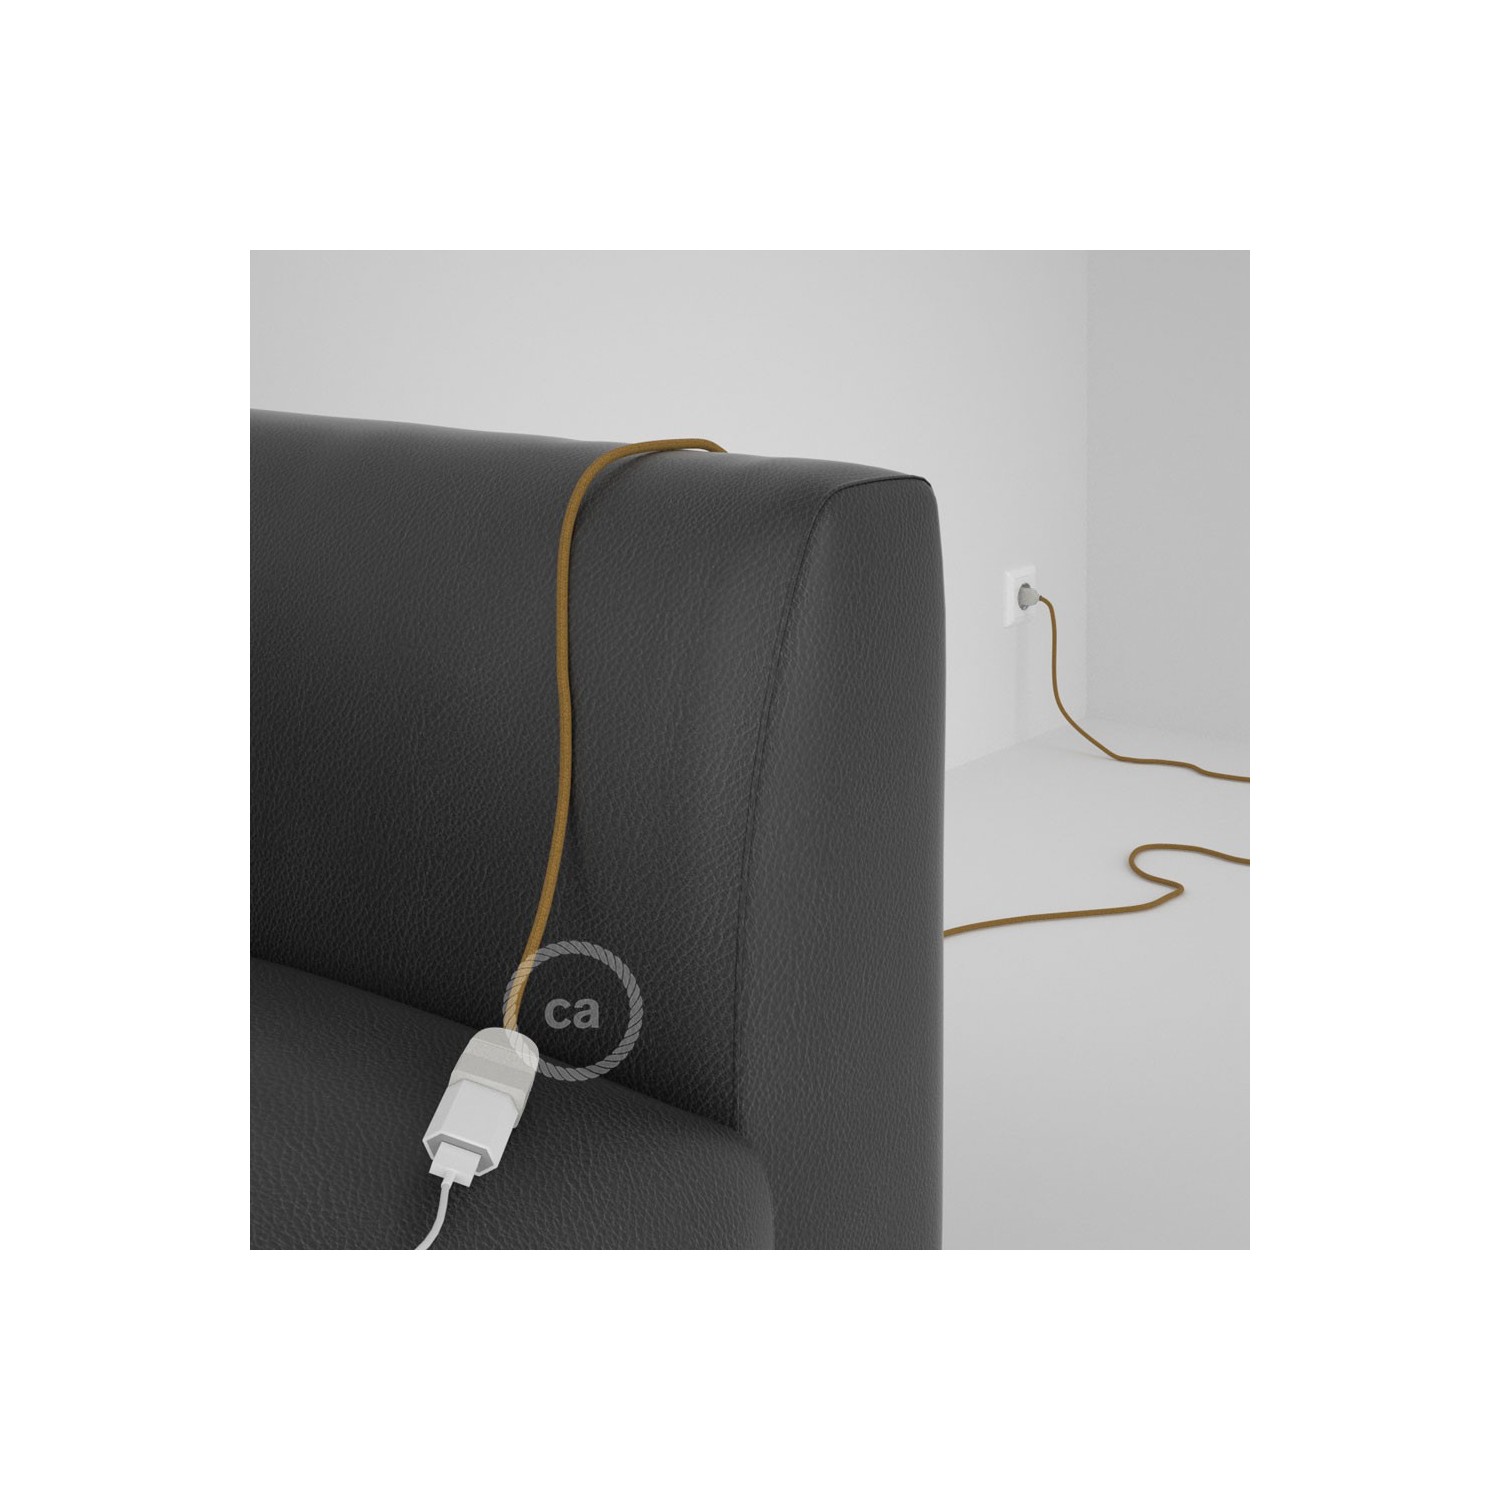 Rallonge électrique avec câble textile RC31 Coton Miel Doré 2P 10A Made in Italy.